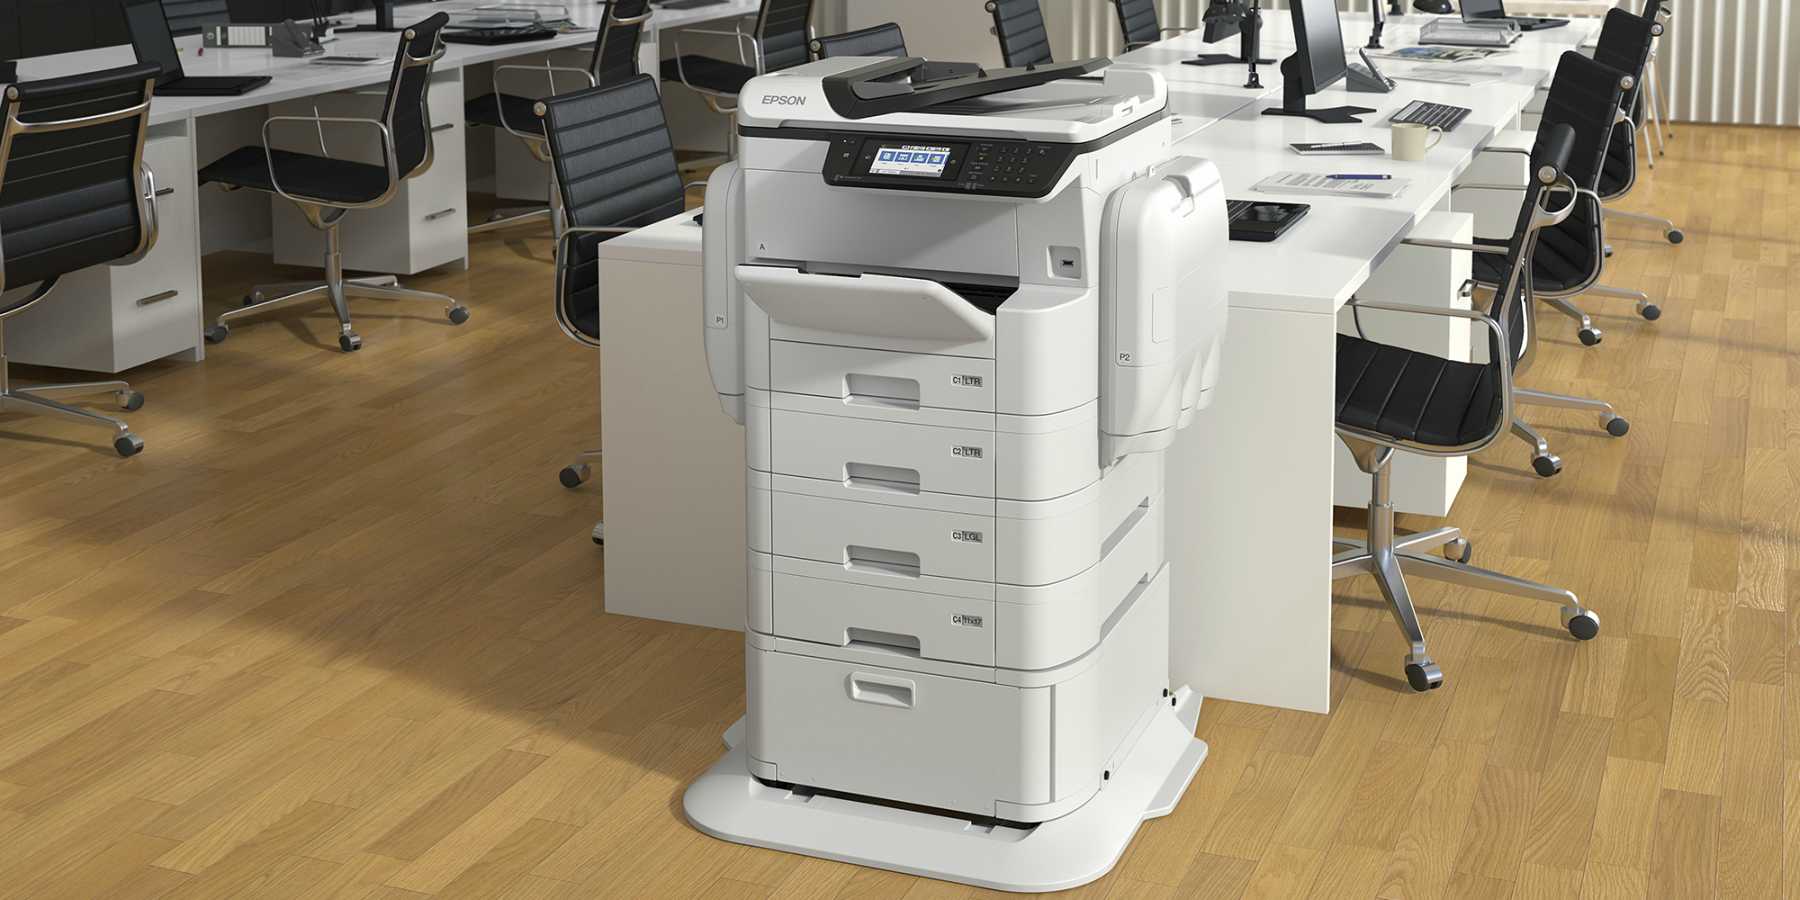 Epson presenta en América Latina su administrador de impresoras Epson Print Admin